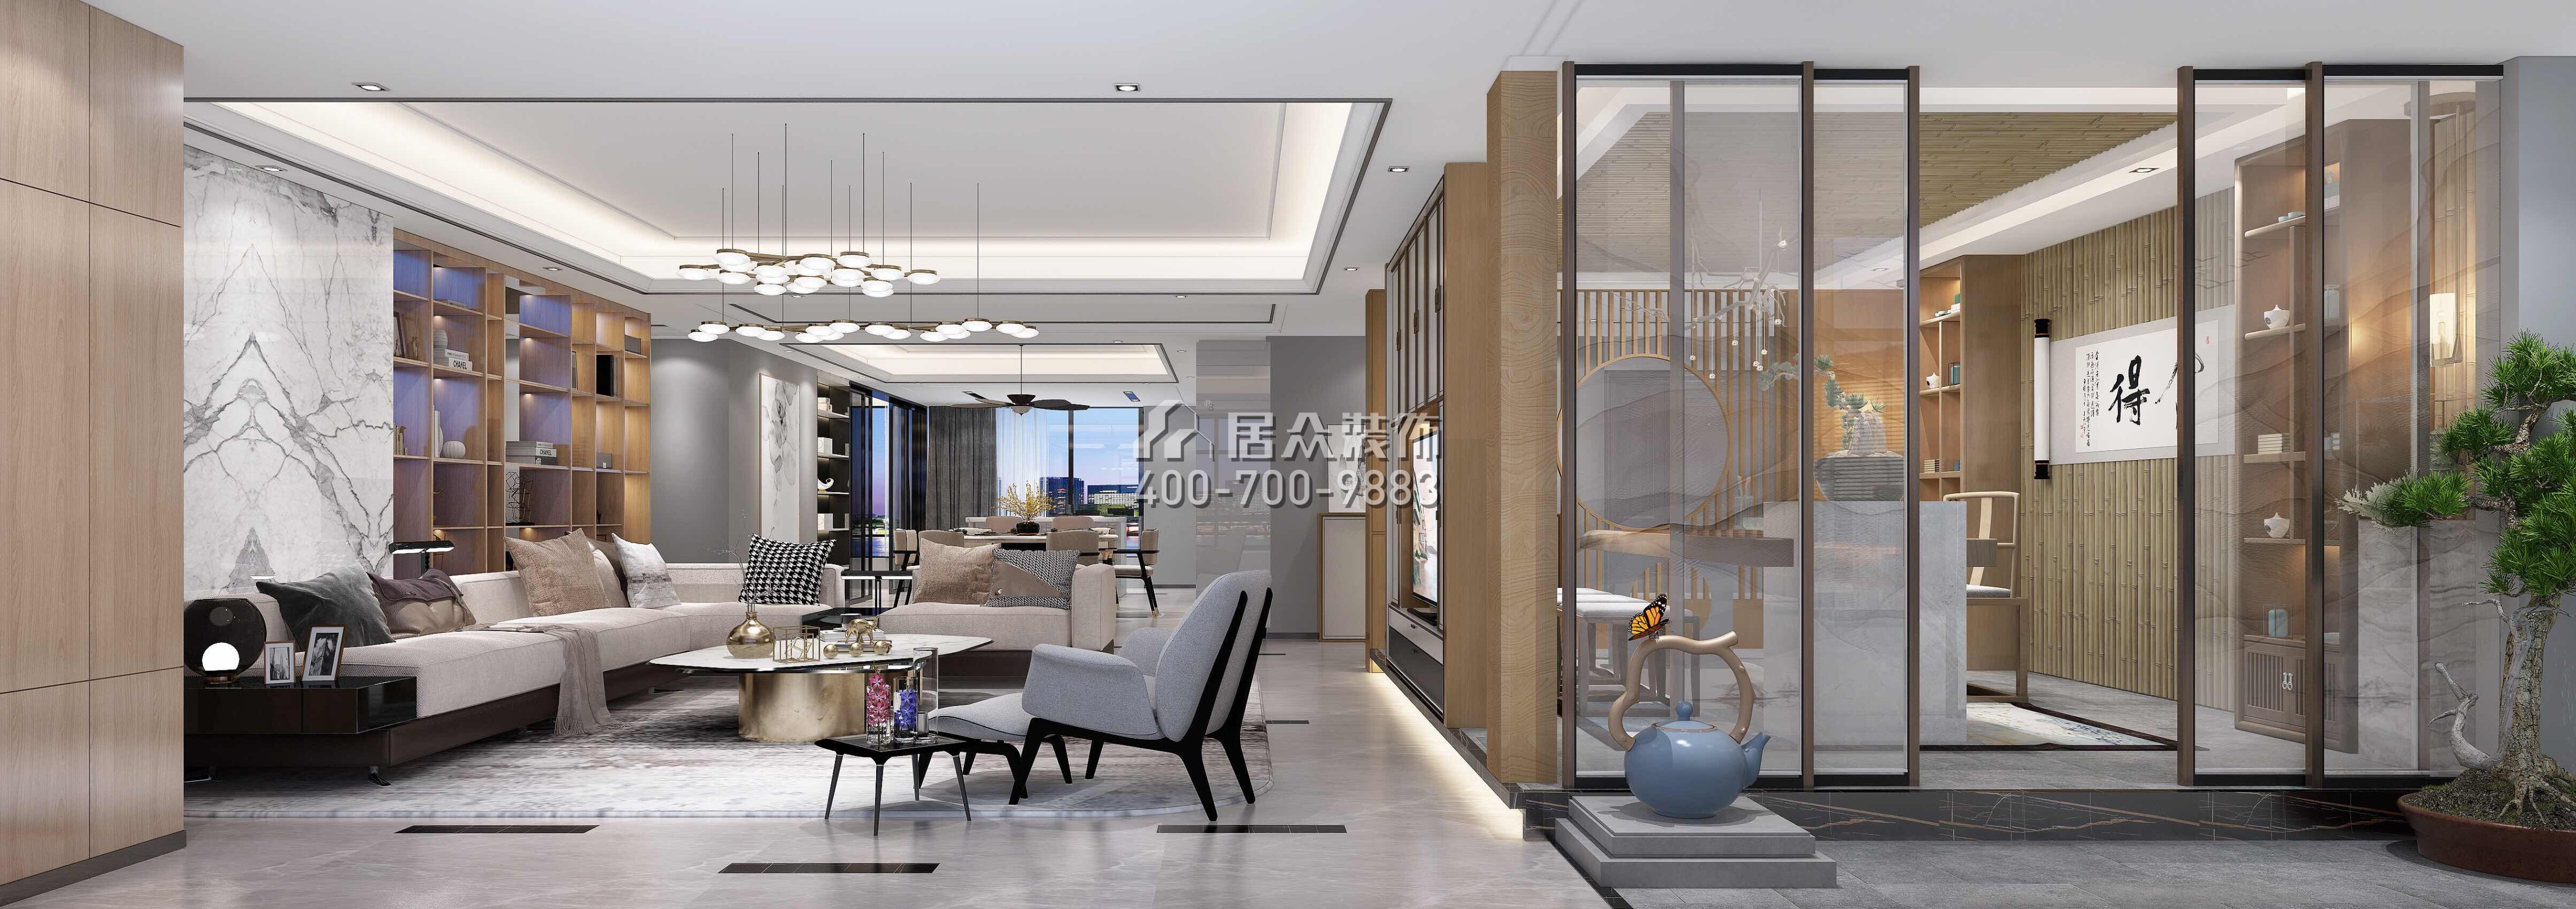 五洲花城330平方米中式风格平层户型客厅kok电竞平台效果图